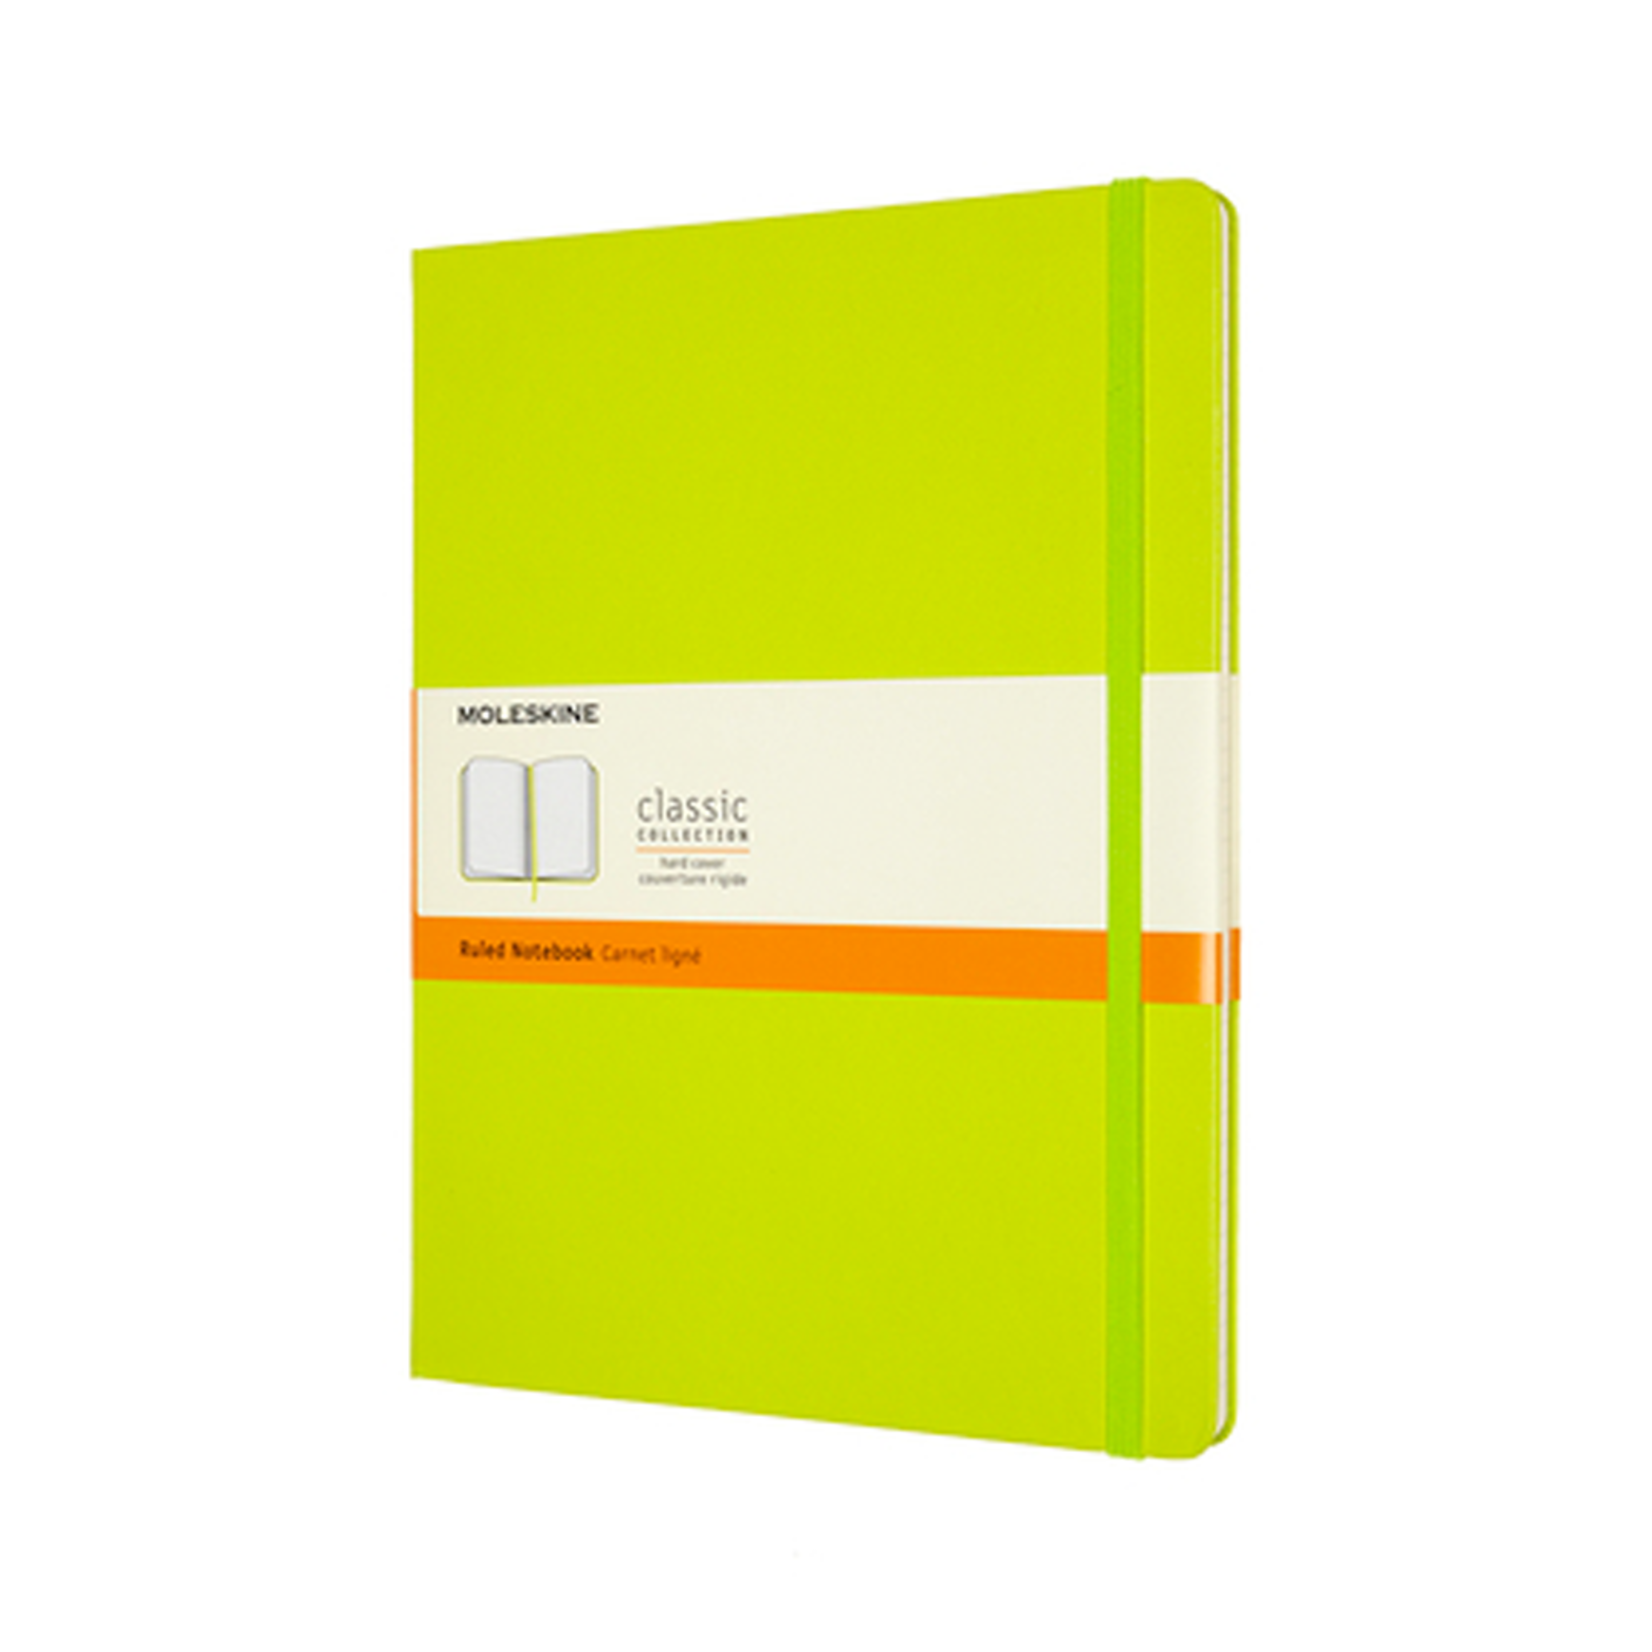 Moleskine Moleskine Classic Notebook, Extra Large, Ruled, Lemon Green, Hard Cover (7.5 X 9.75)